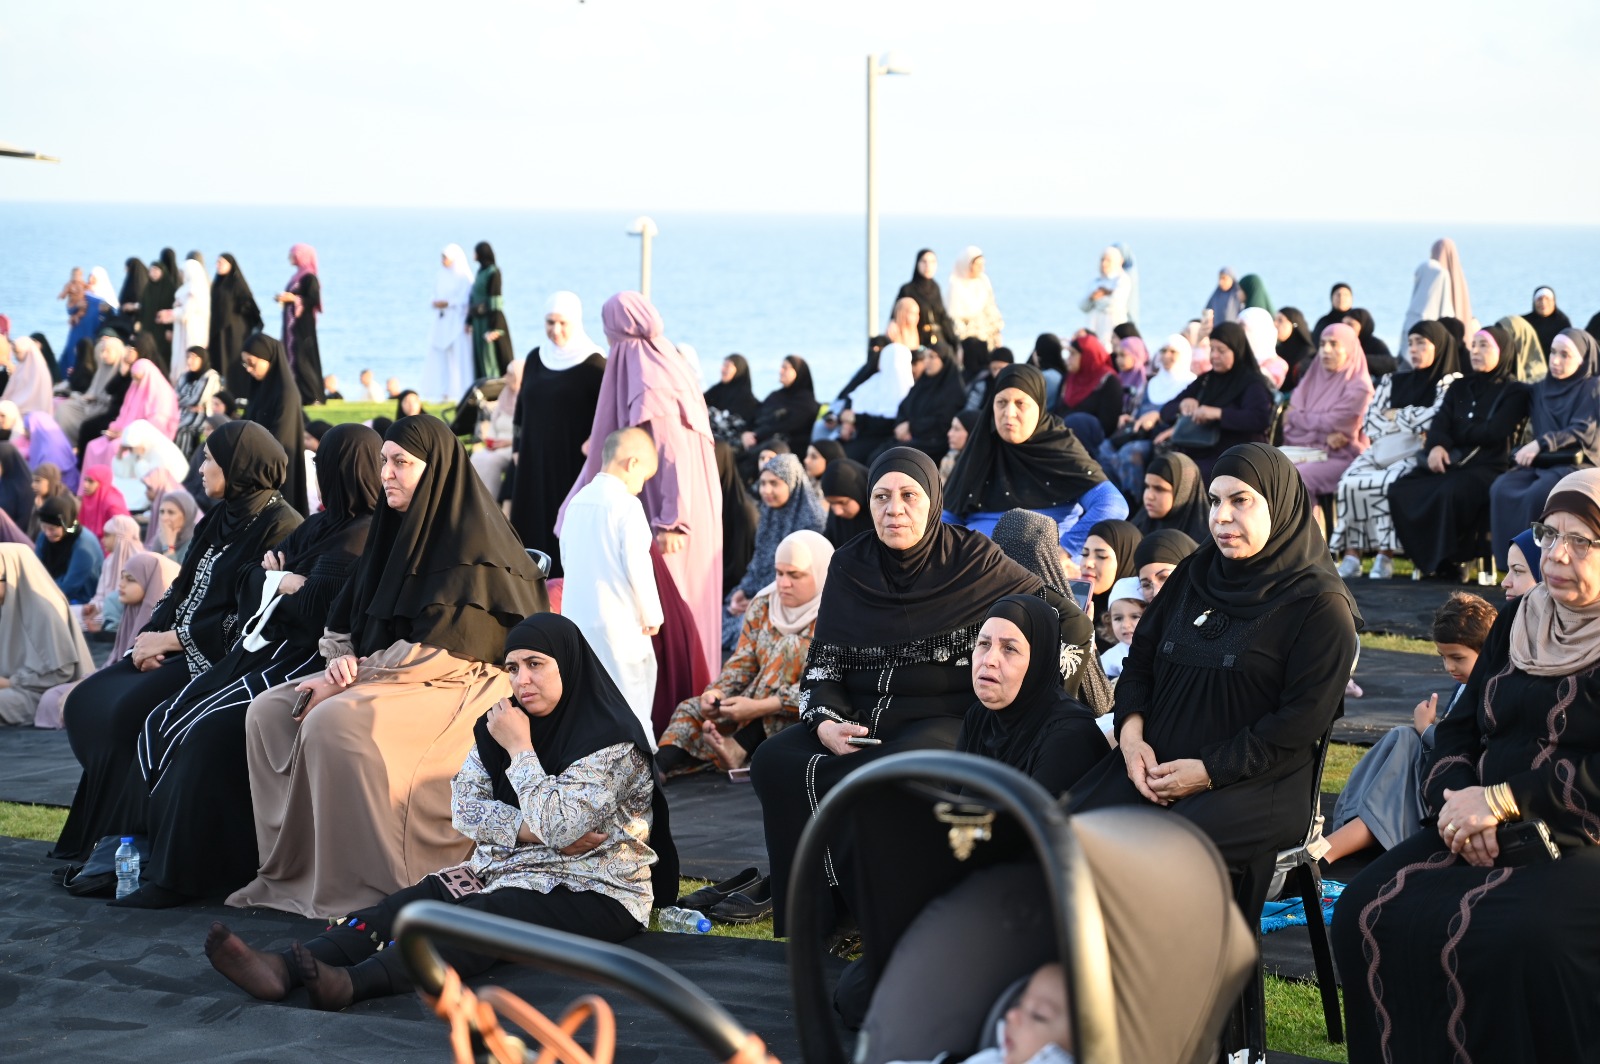 أهالي يافا يؤدون صلاة عيد الأضحى المبارك في متنزه العجمي 